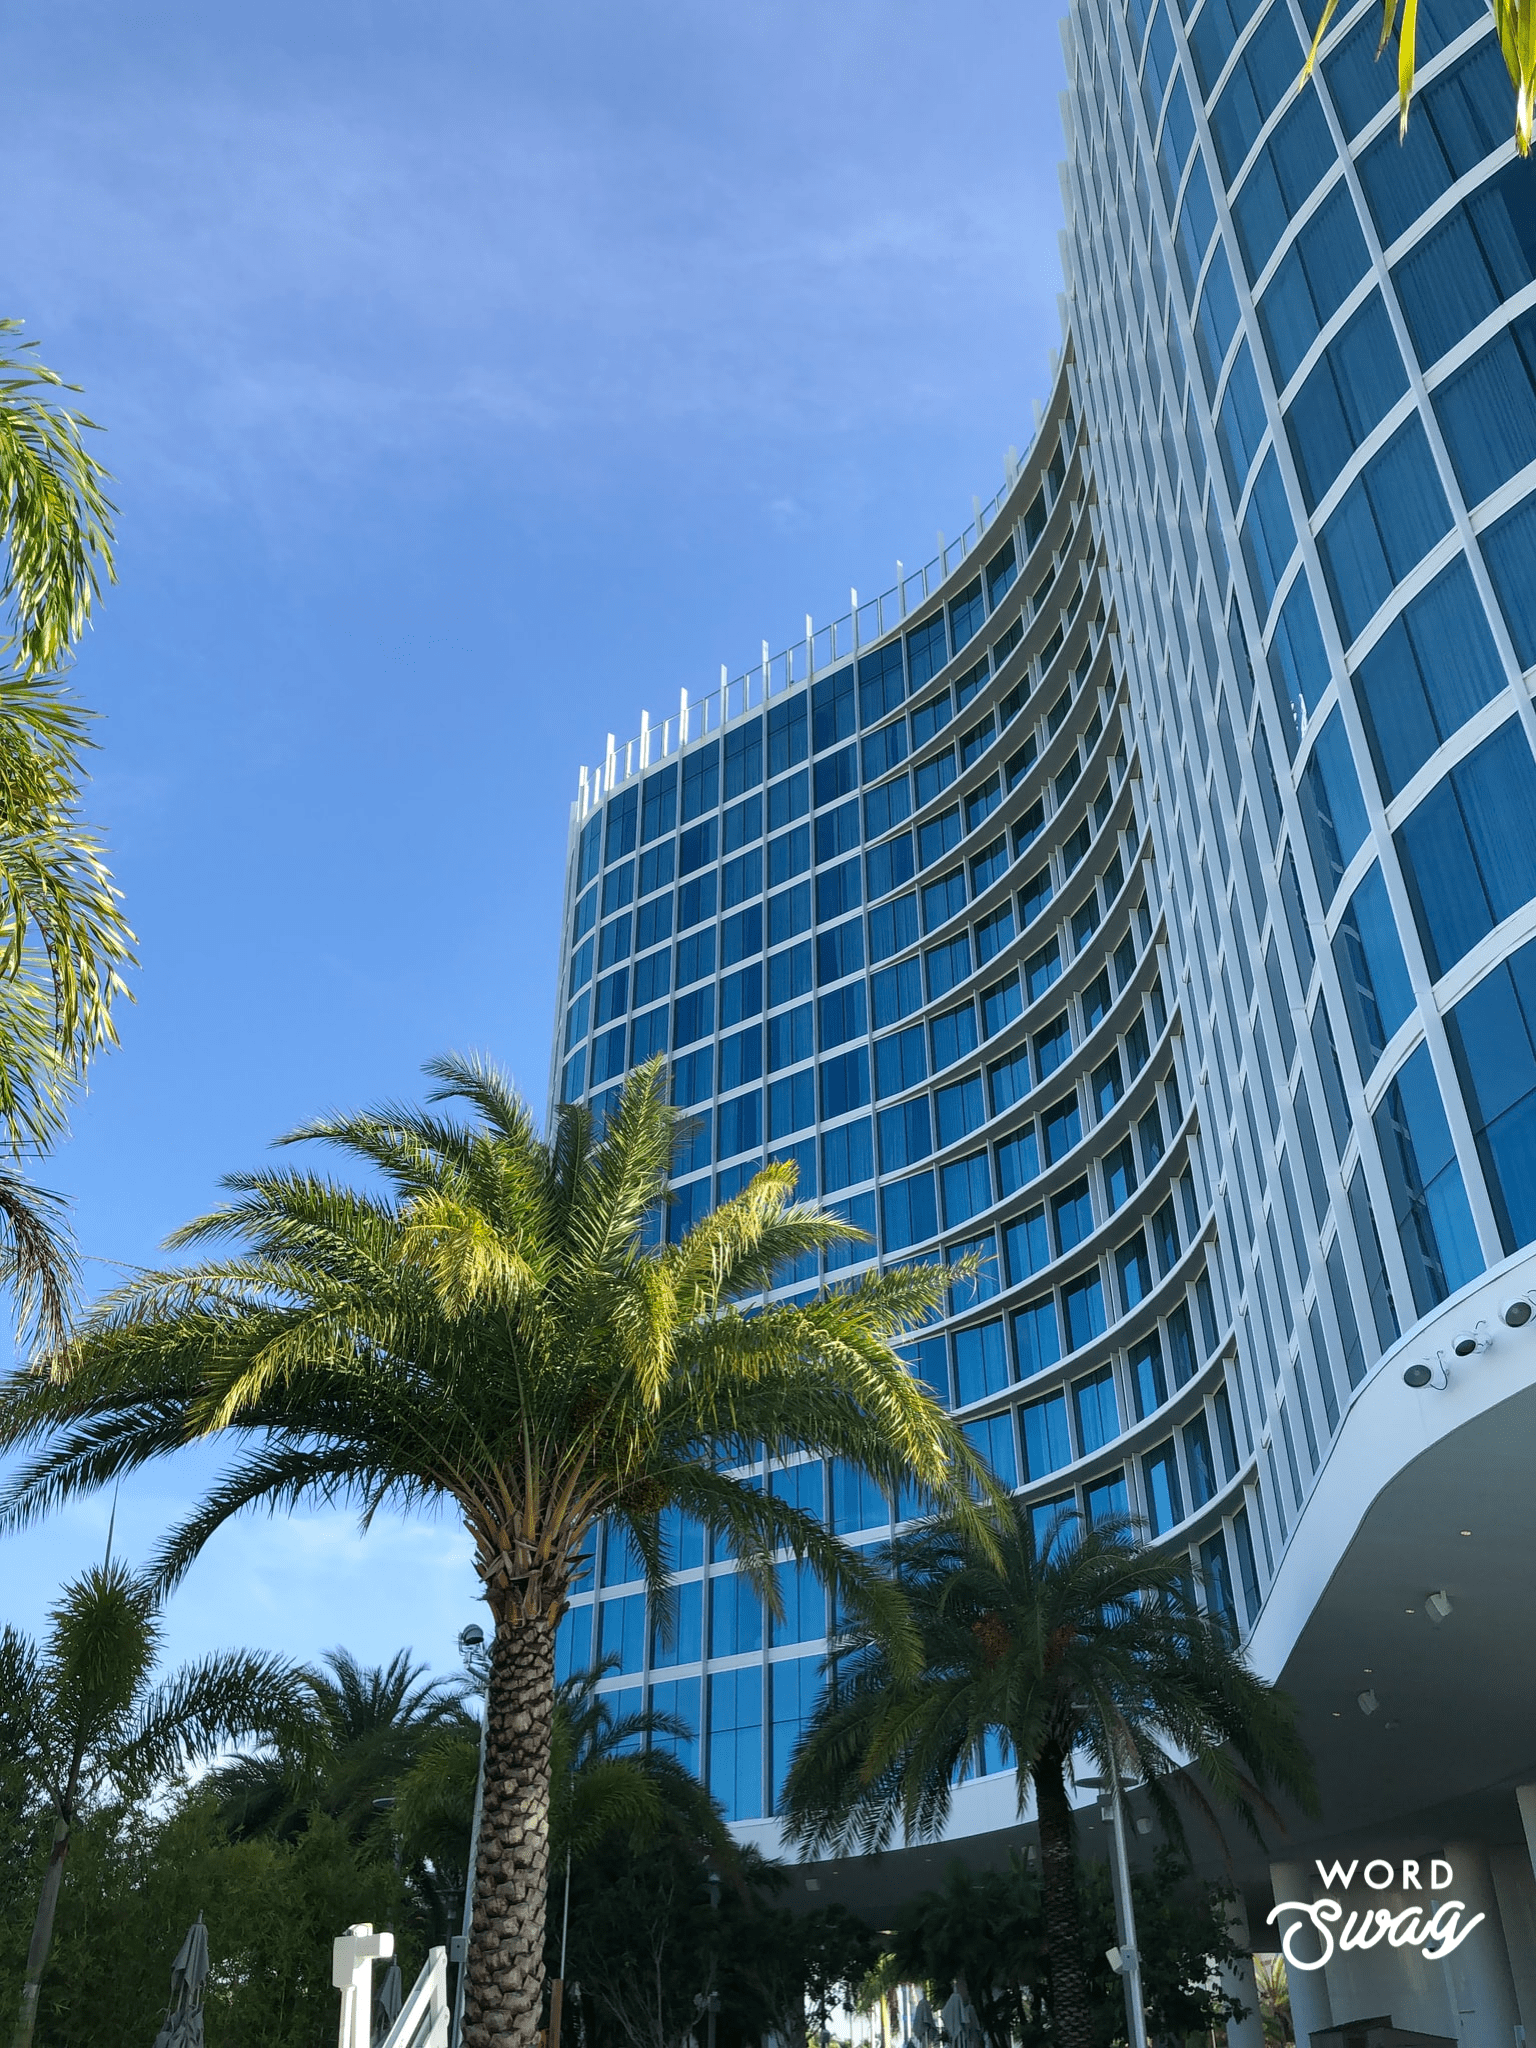 Hotels at Universal Orlando